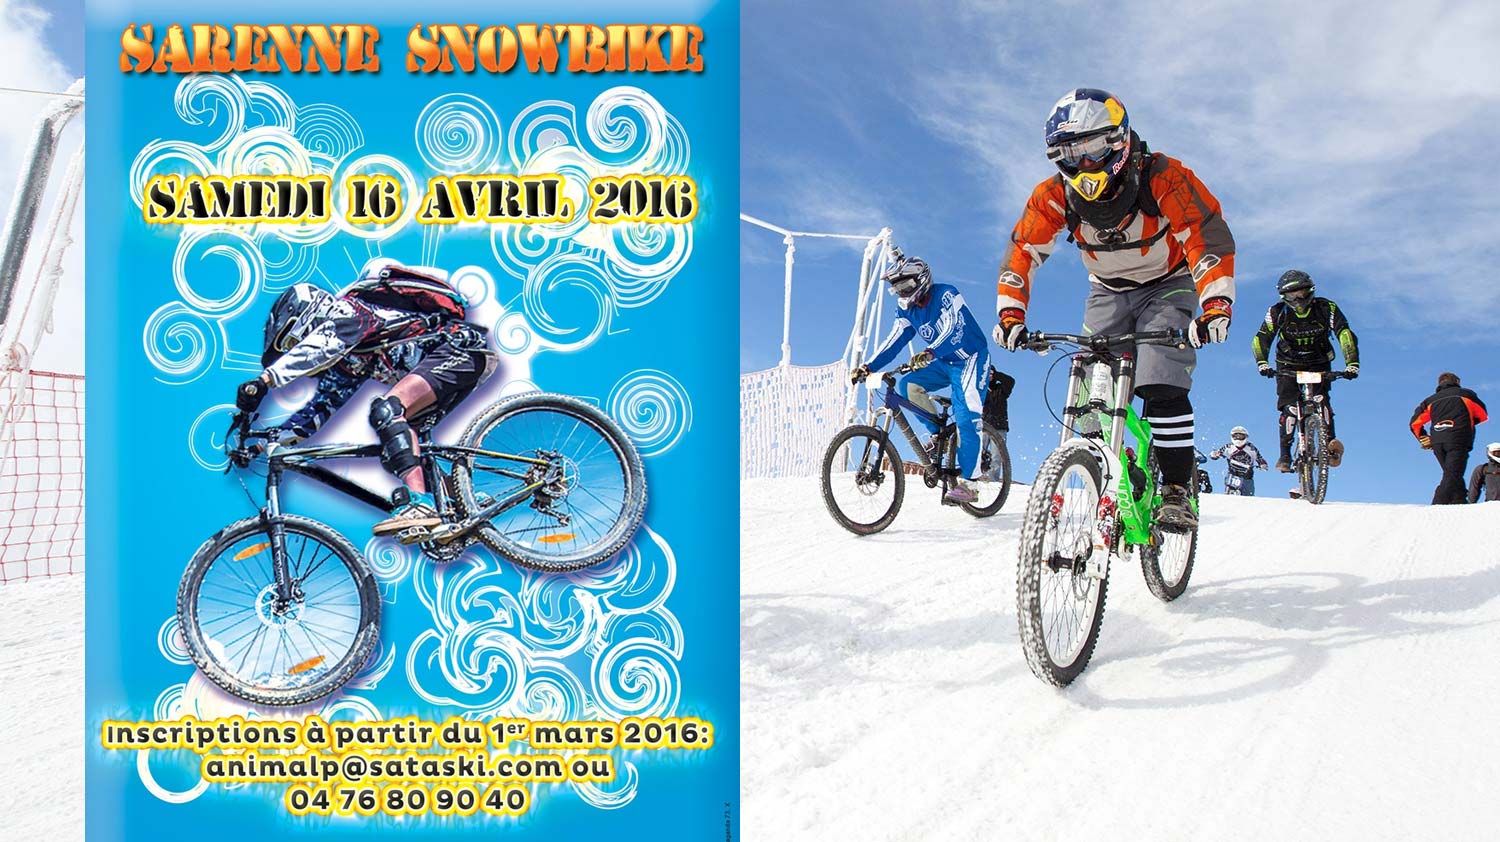 Sarenne Snowbike 2016 Alpe d'Huez